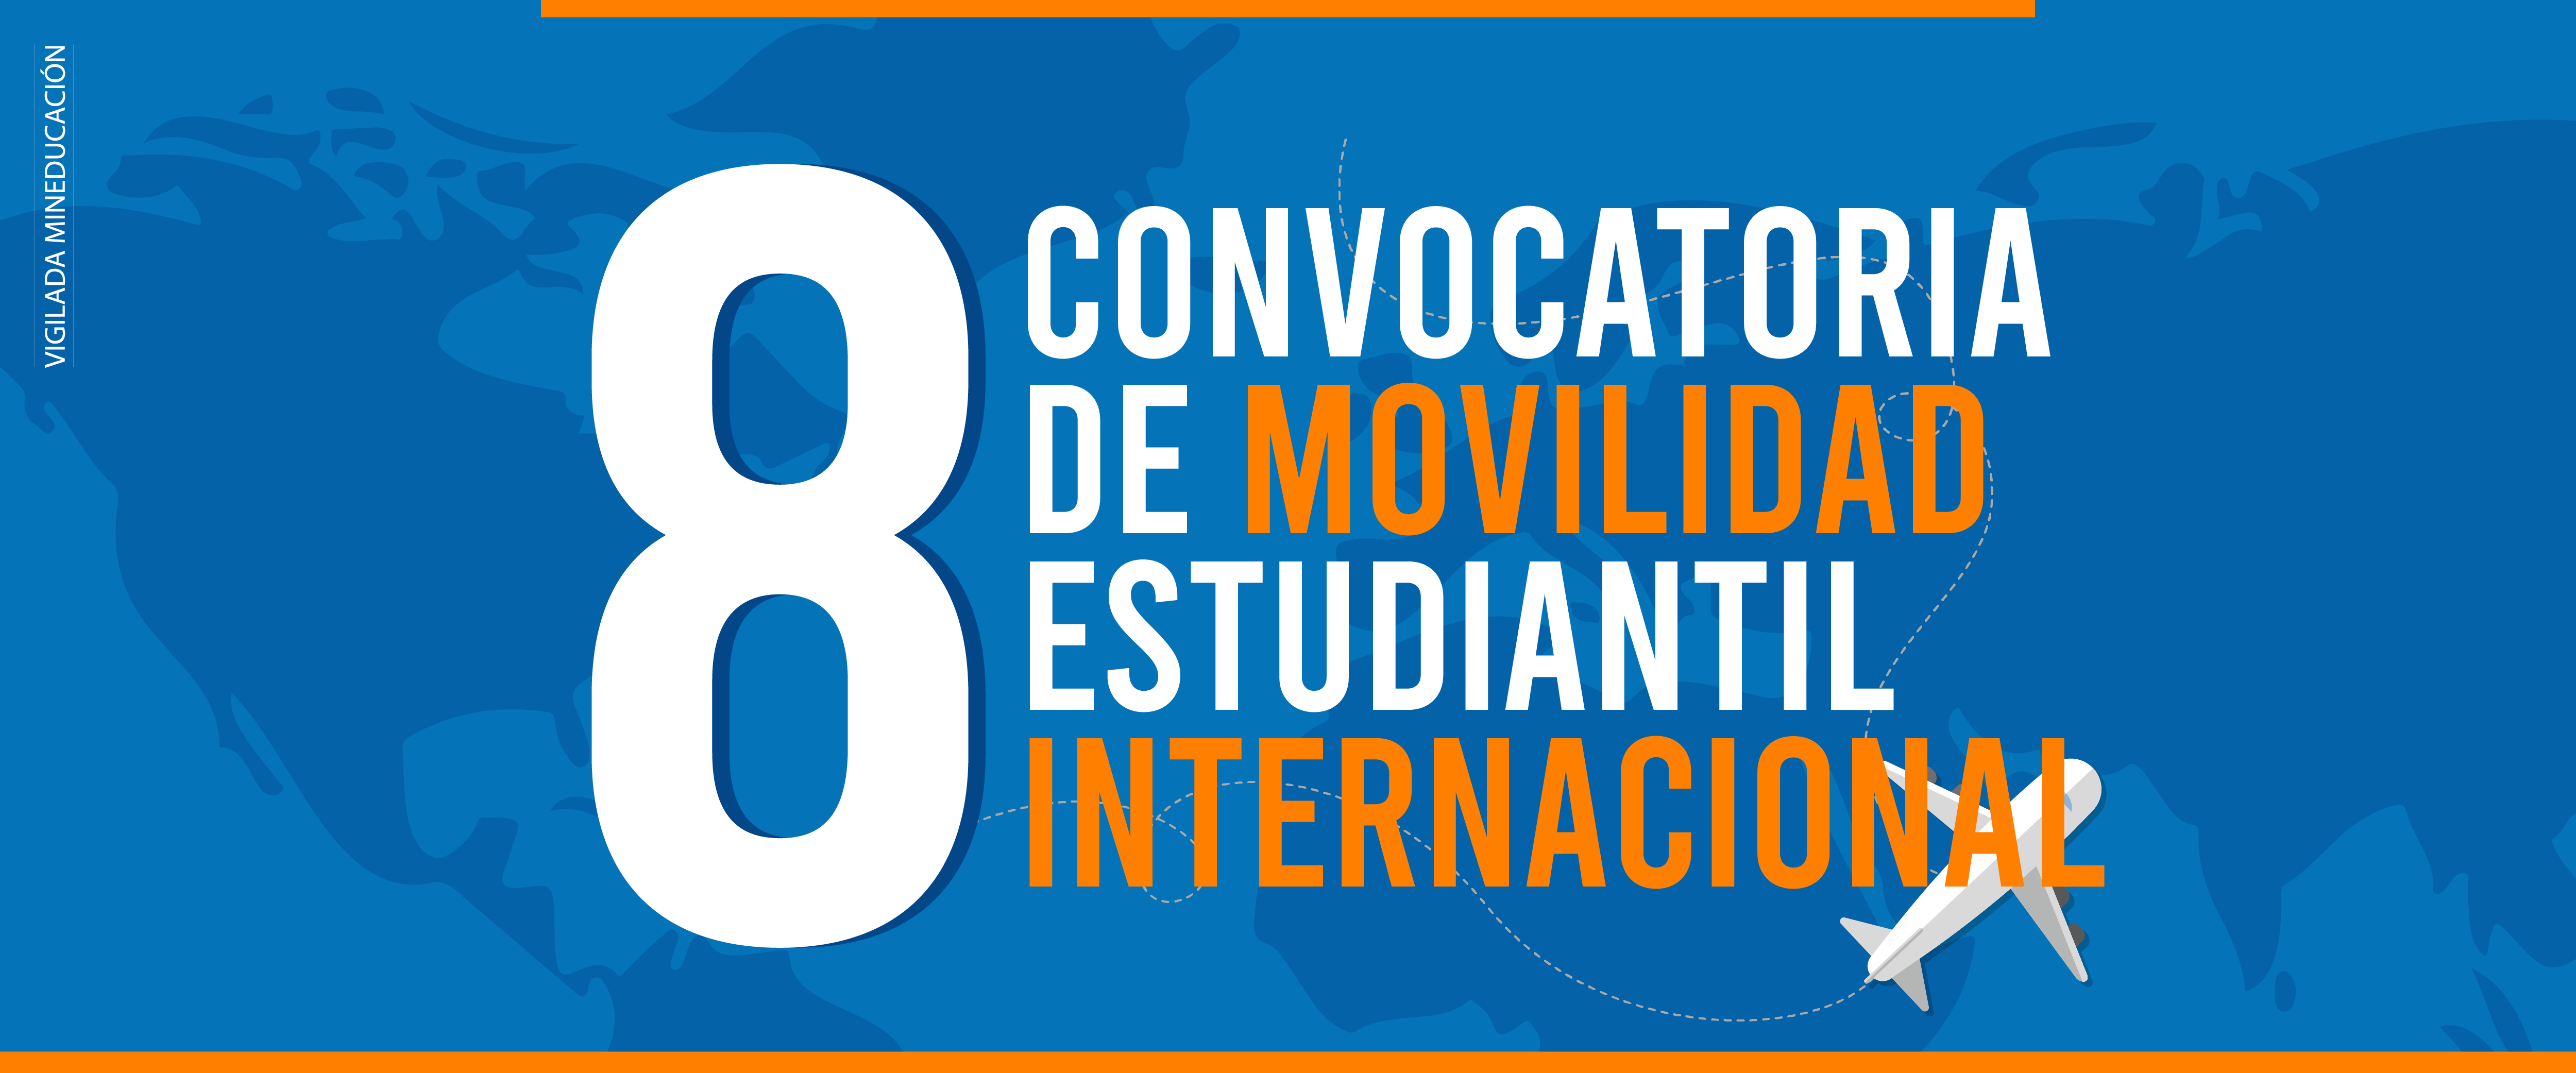 8 convocatoria movilidad internacional unicomfacauca 02